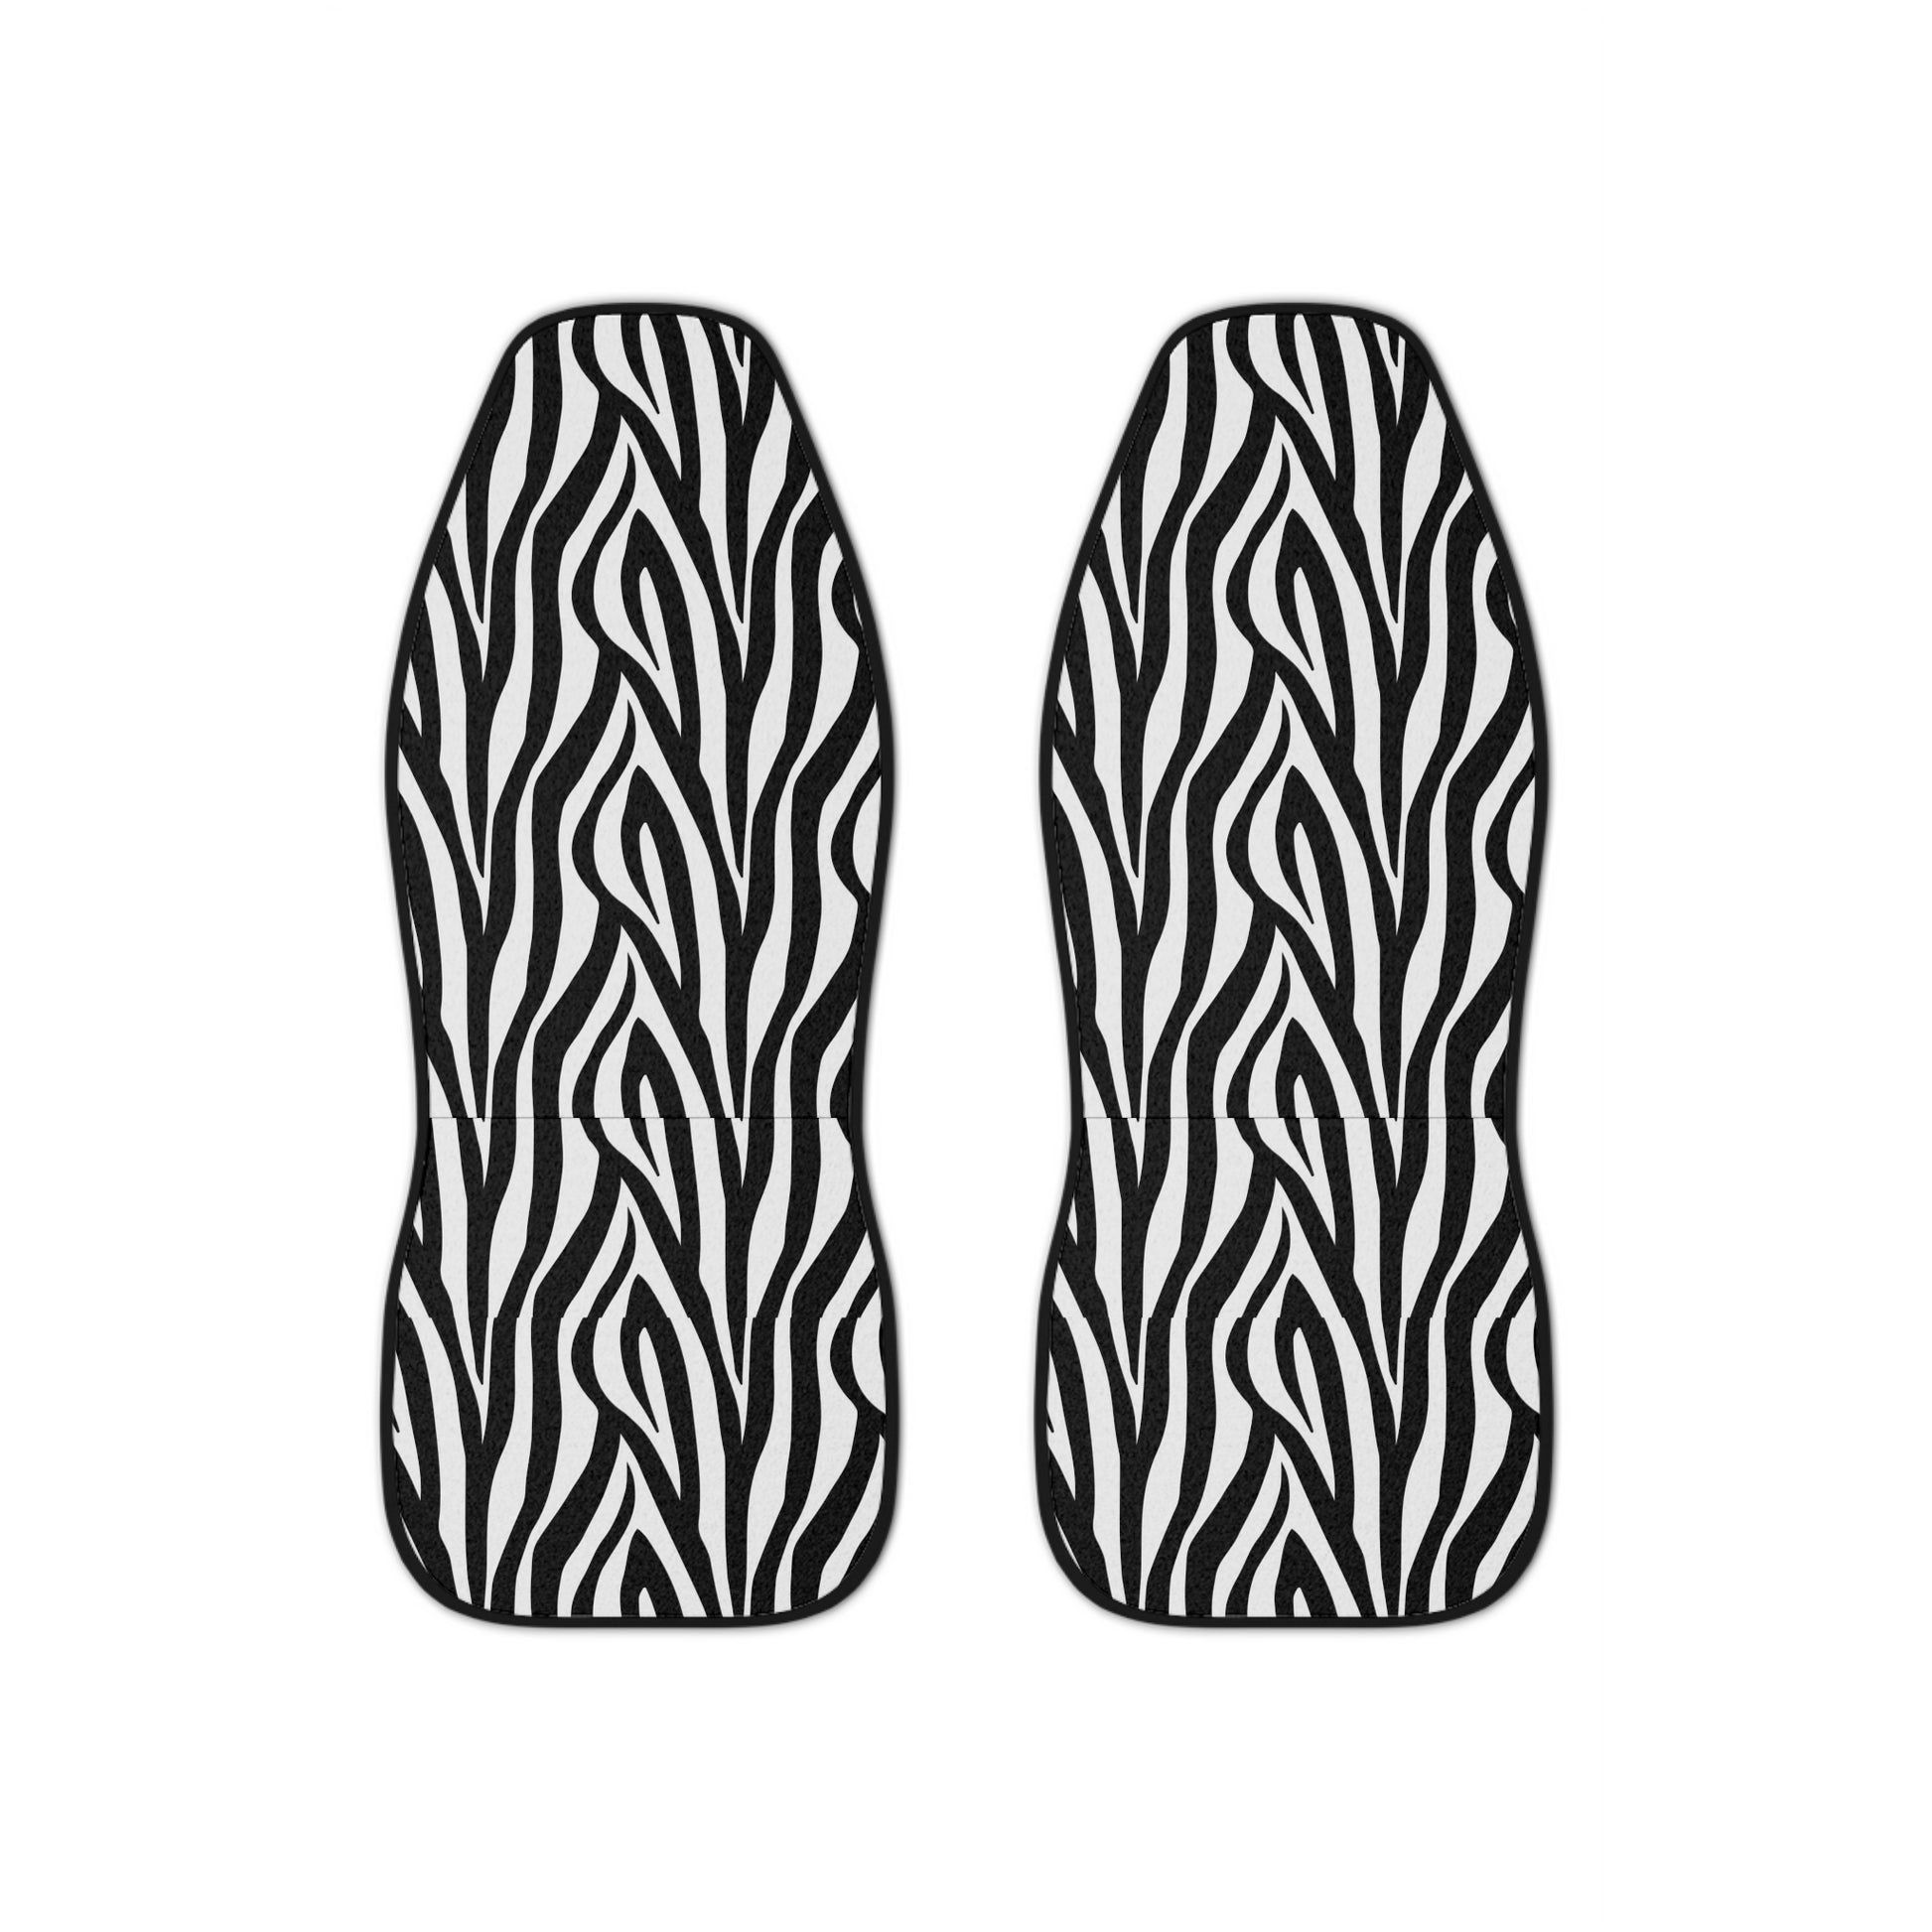 Zebra Print Car Seat Cover